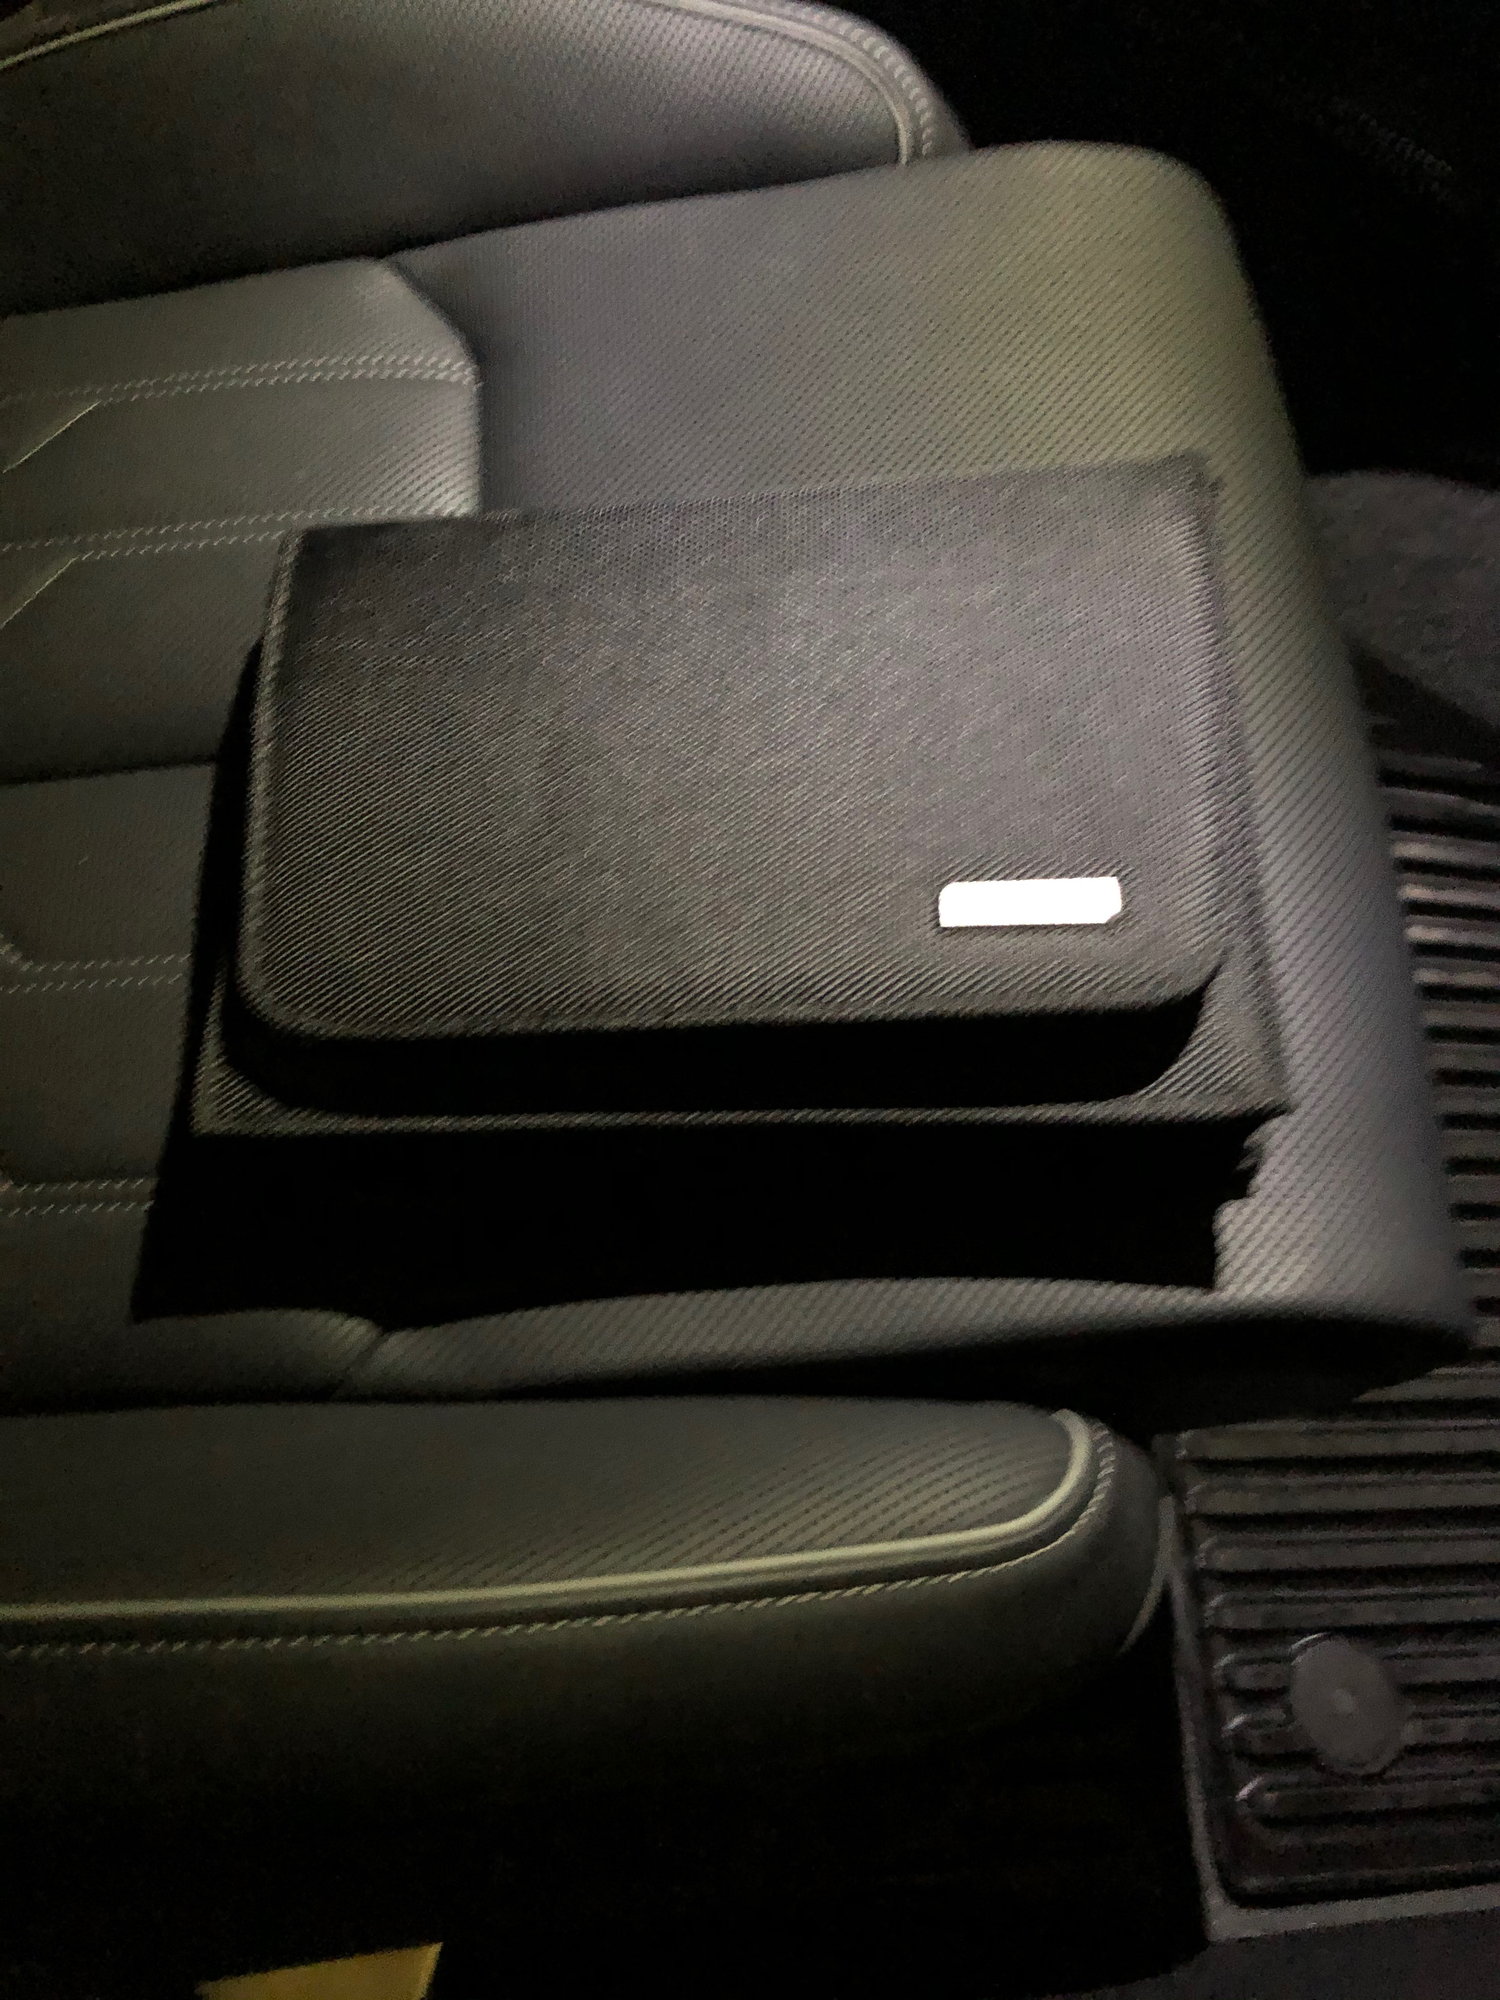 owner manual case? - AudiWorld Forums